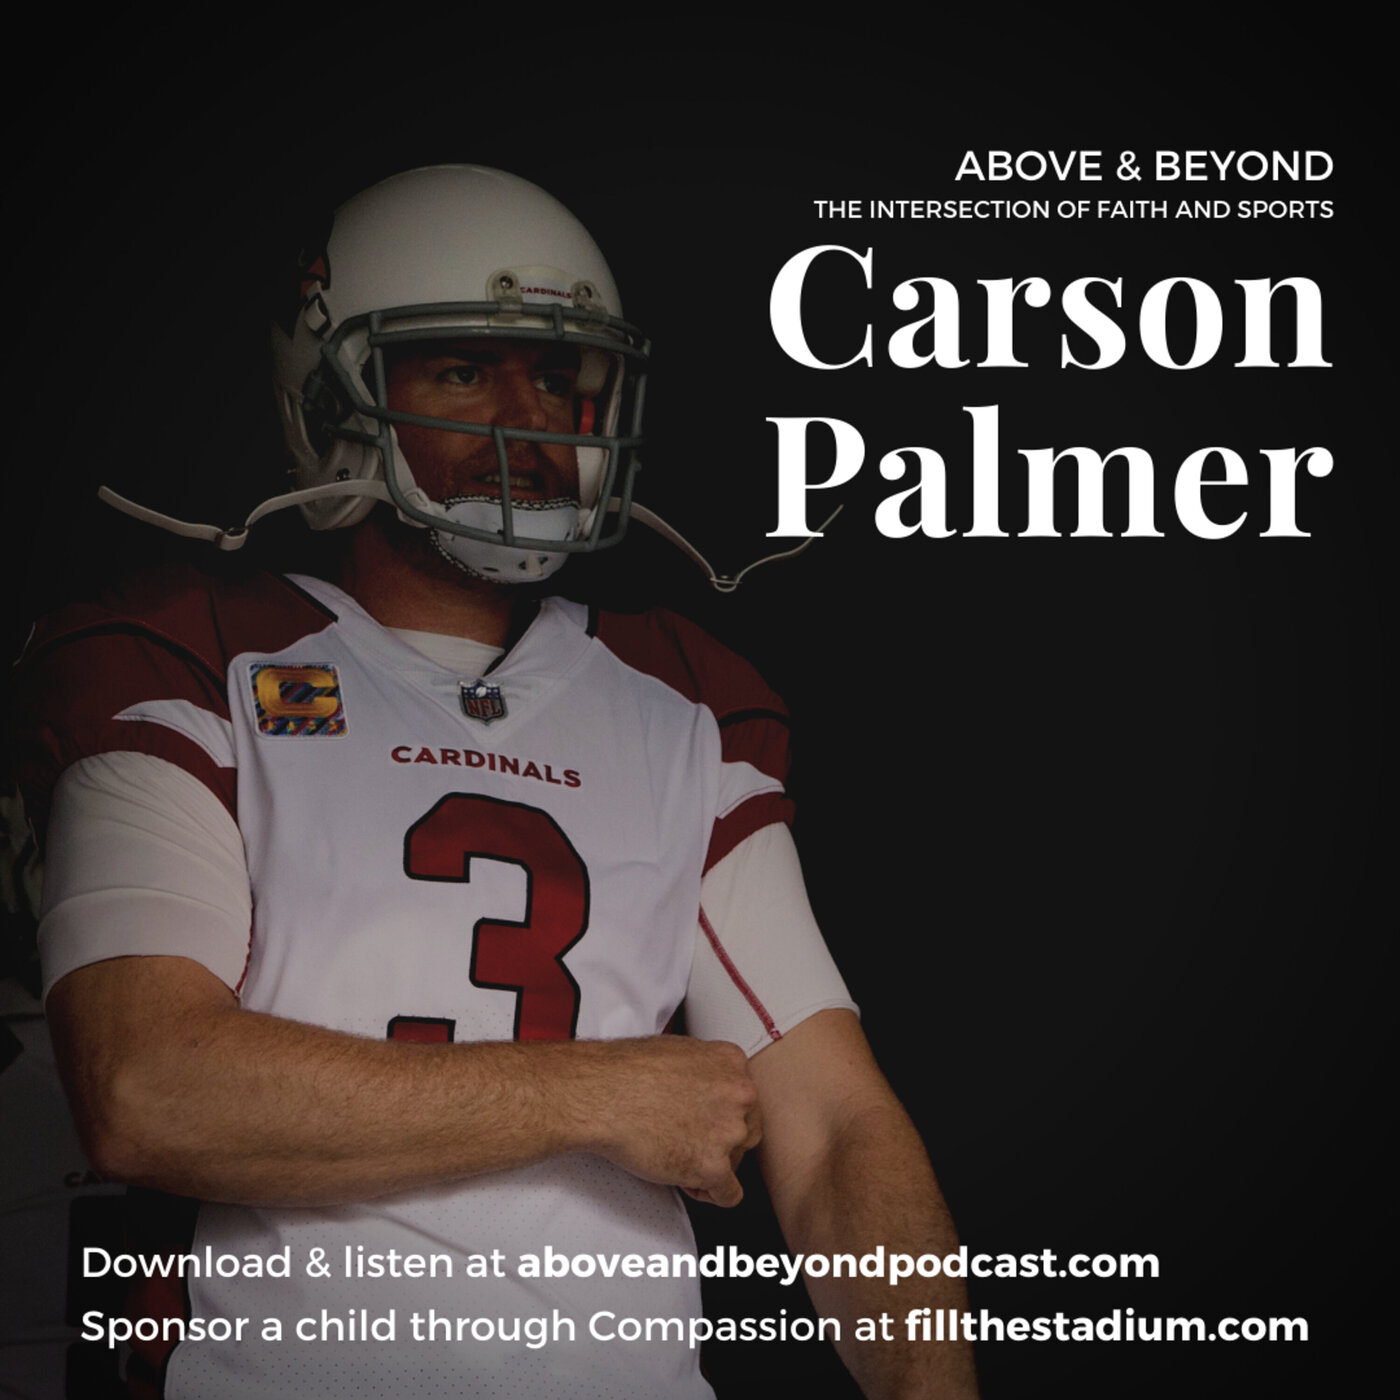 Carson Palmer: Gaining an Enduring Faith